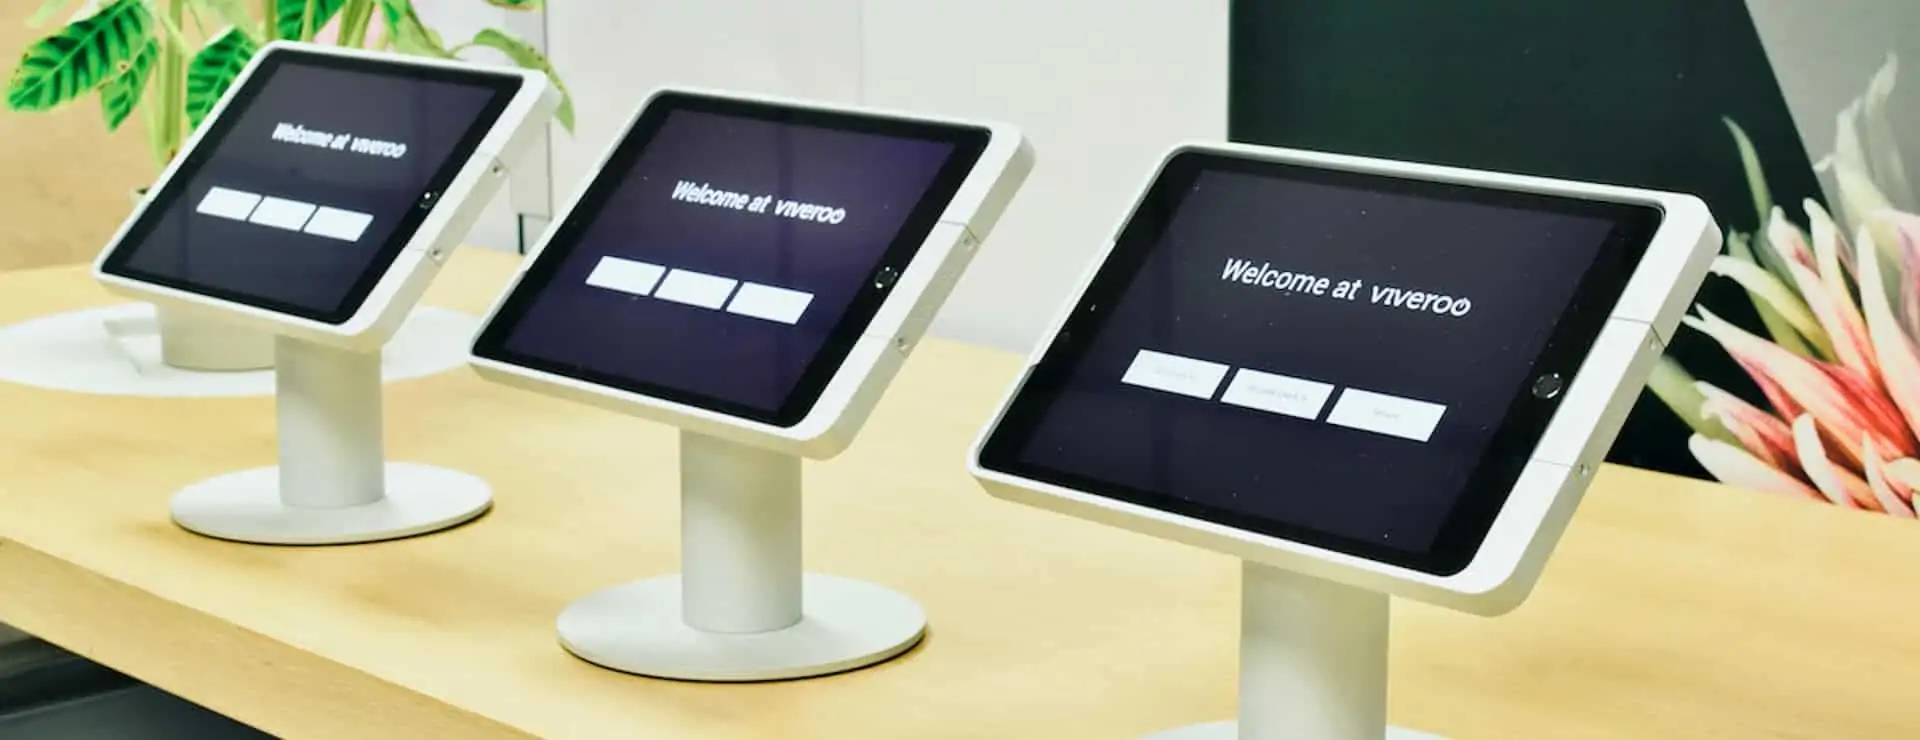 Viveroo one kiosk 3 iPad Tischständer in Reihe zum Check In